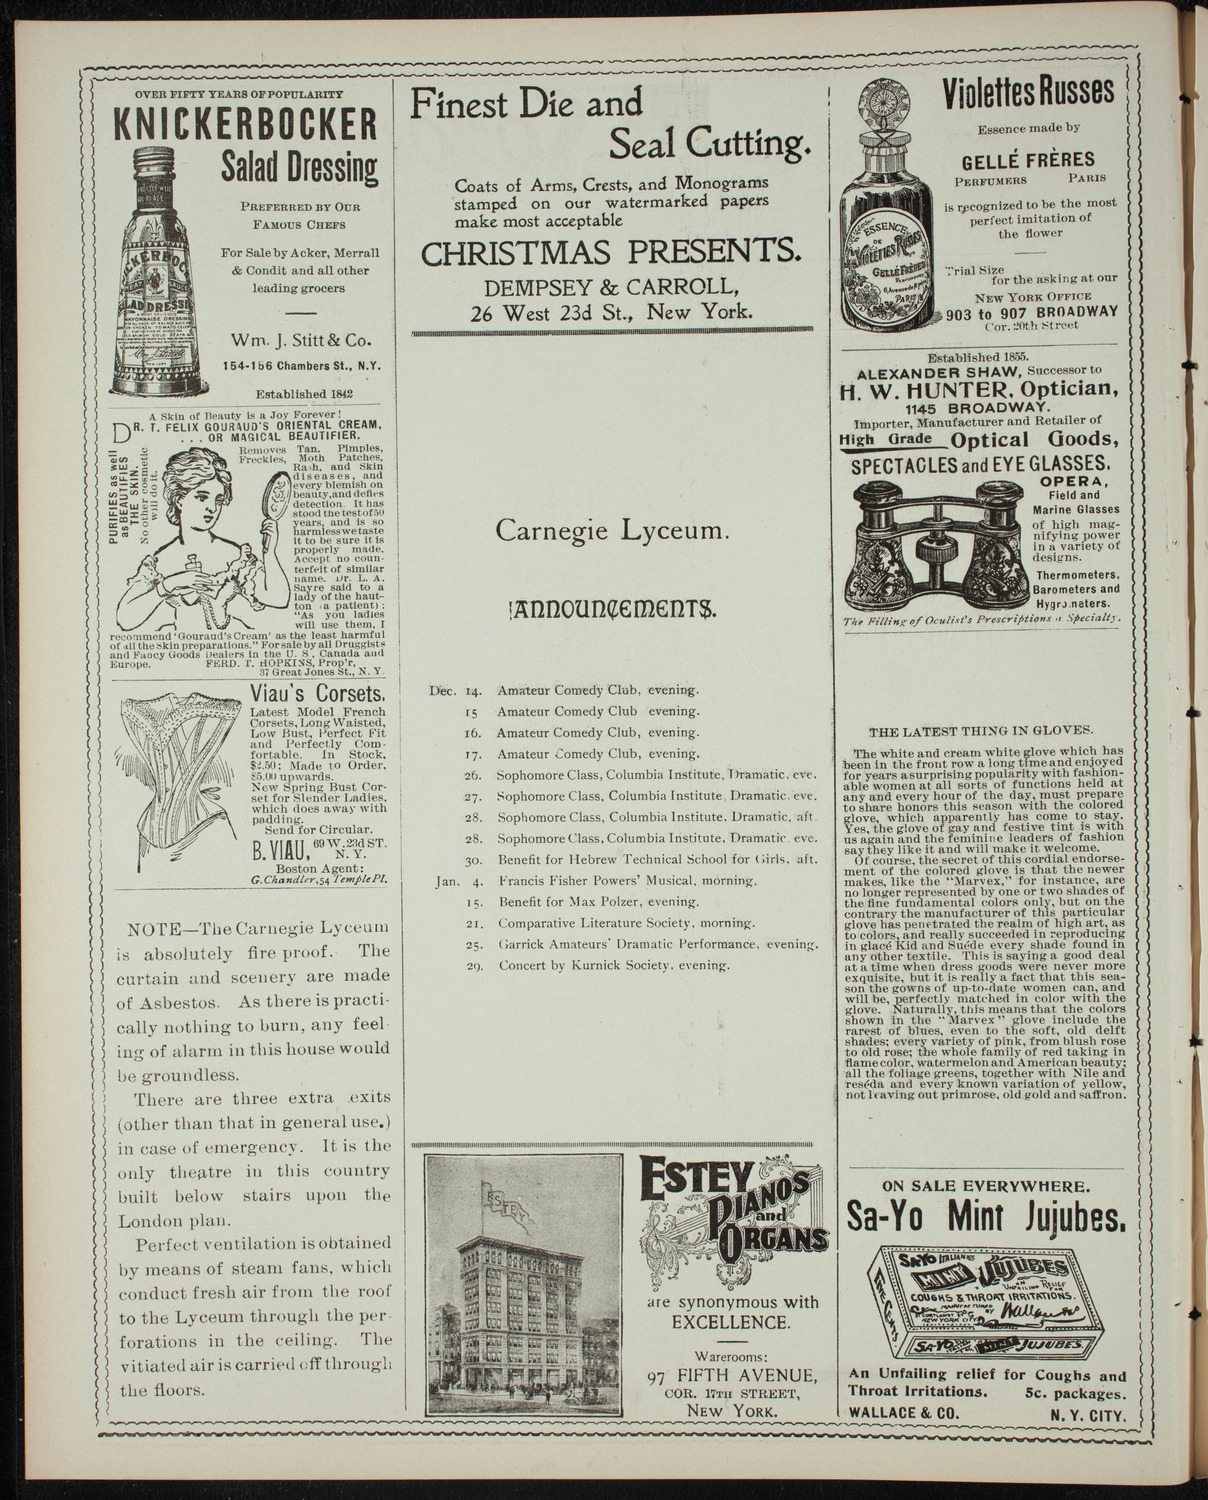 Cercle Choral et Dramatique Francais "La Cigale", December 10, 1898, program page 2